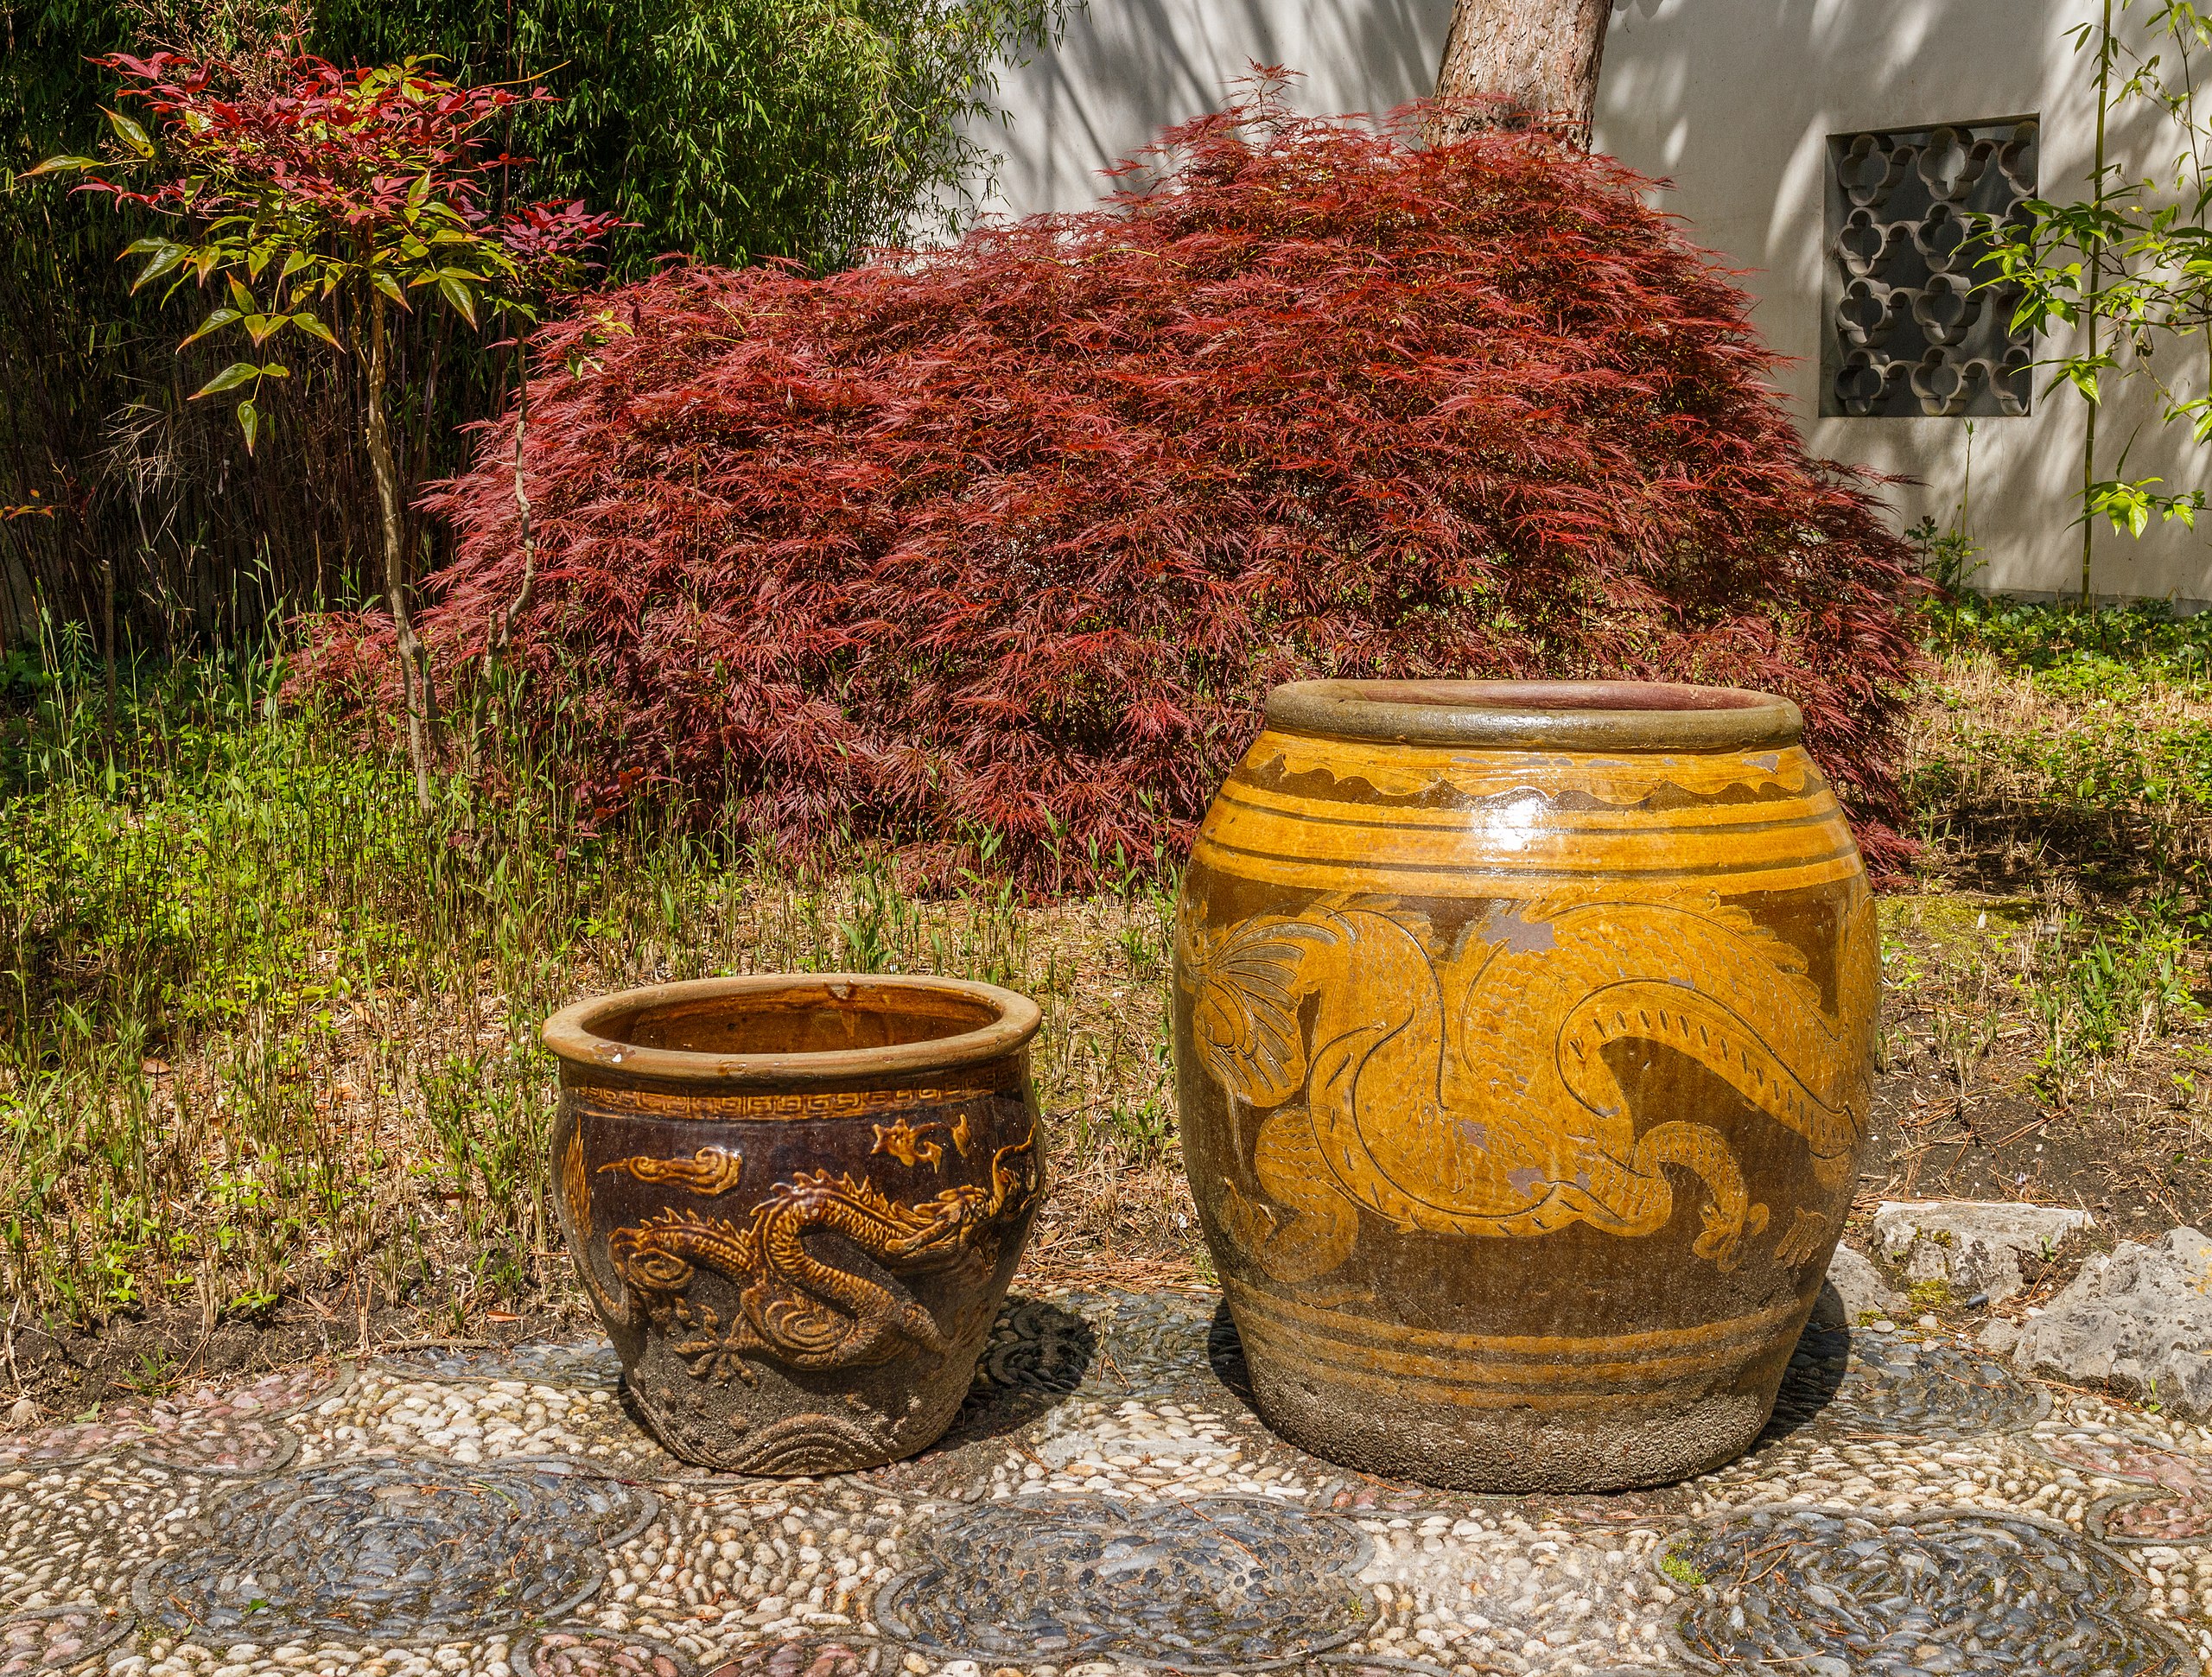 File:Chinese stenen potten voor Japanse esdoorn (Acer palmatum). Locatie, Chinese Het Verborgen Rijk van Ming in de Hortus 02.jpg - Wikimedia Commons